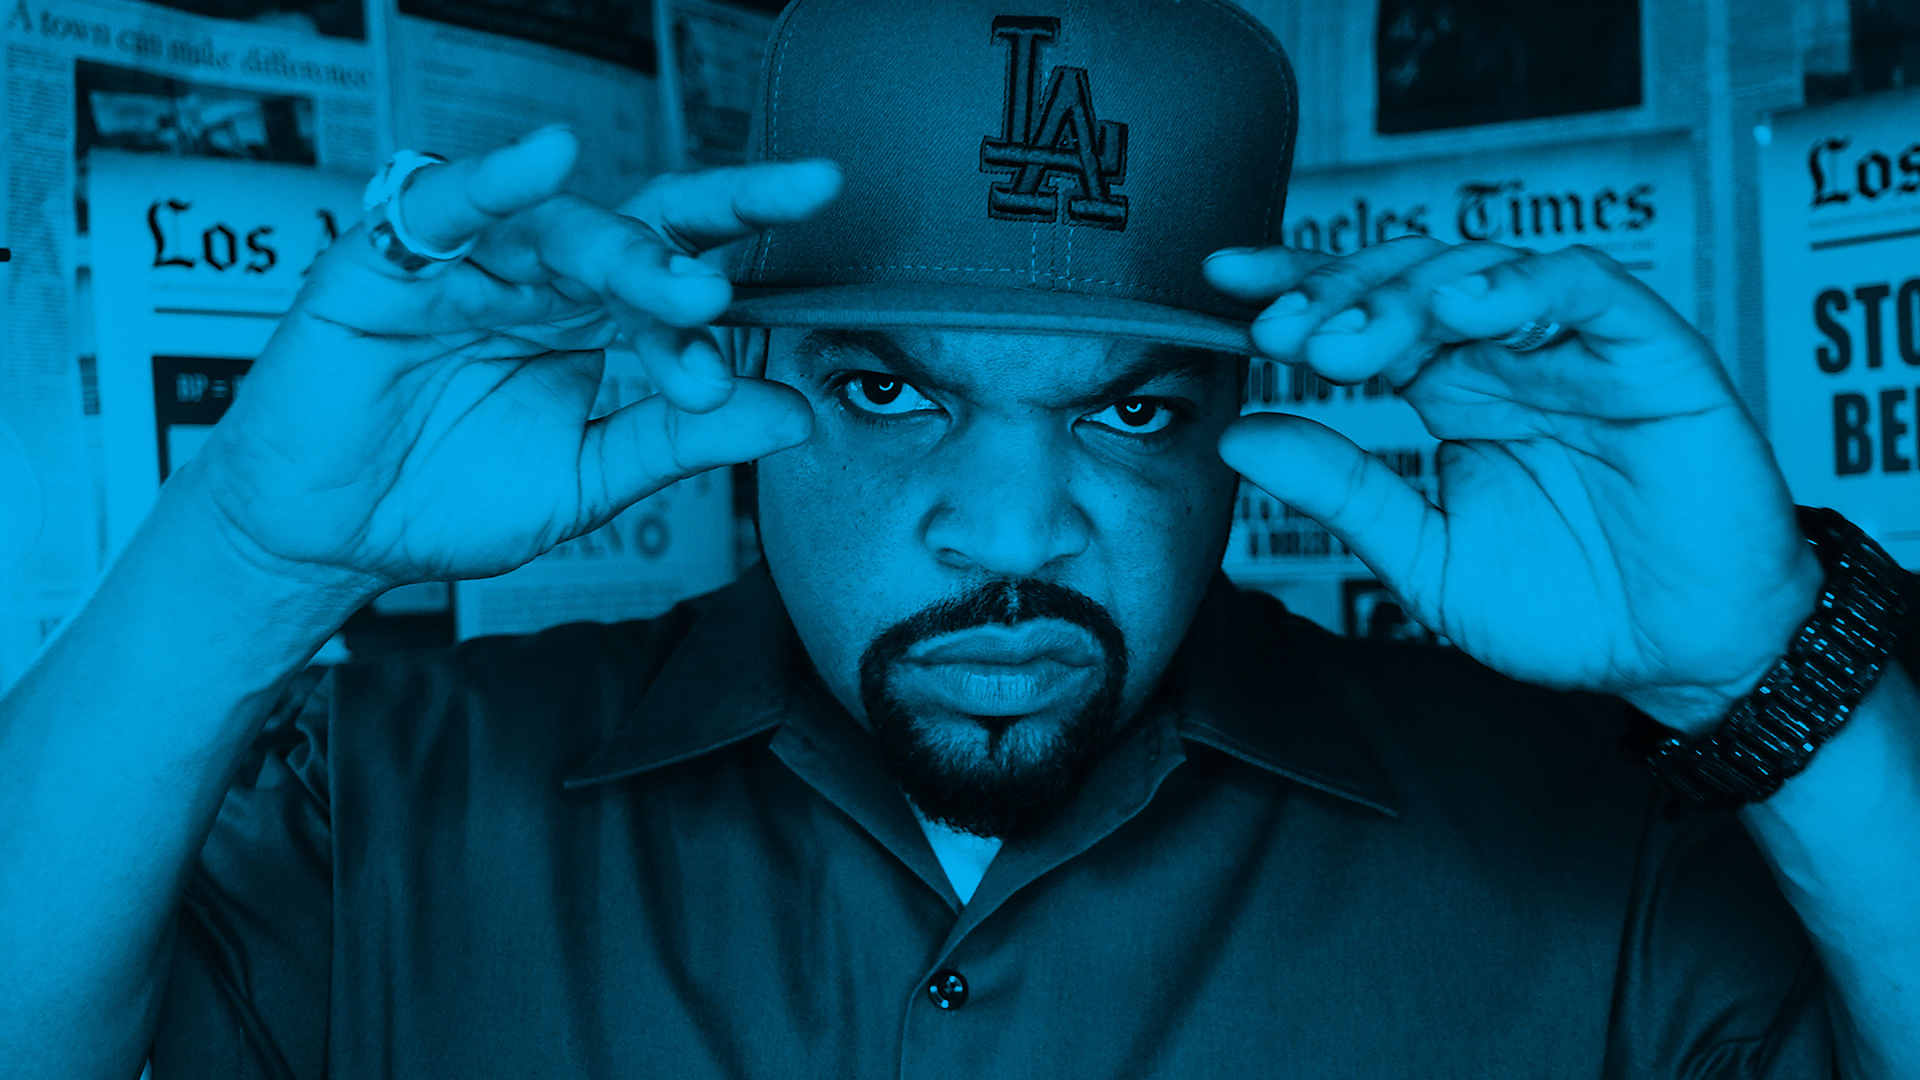 Neste Blir Amerikkka's Most Wanted av Ice Cube